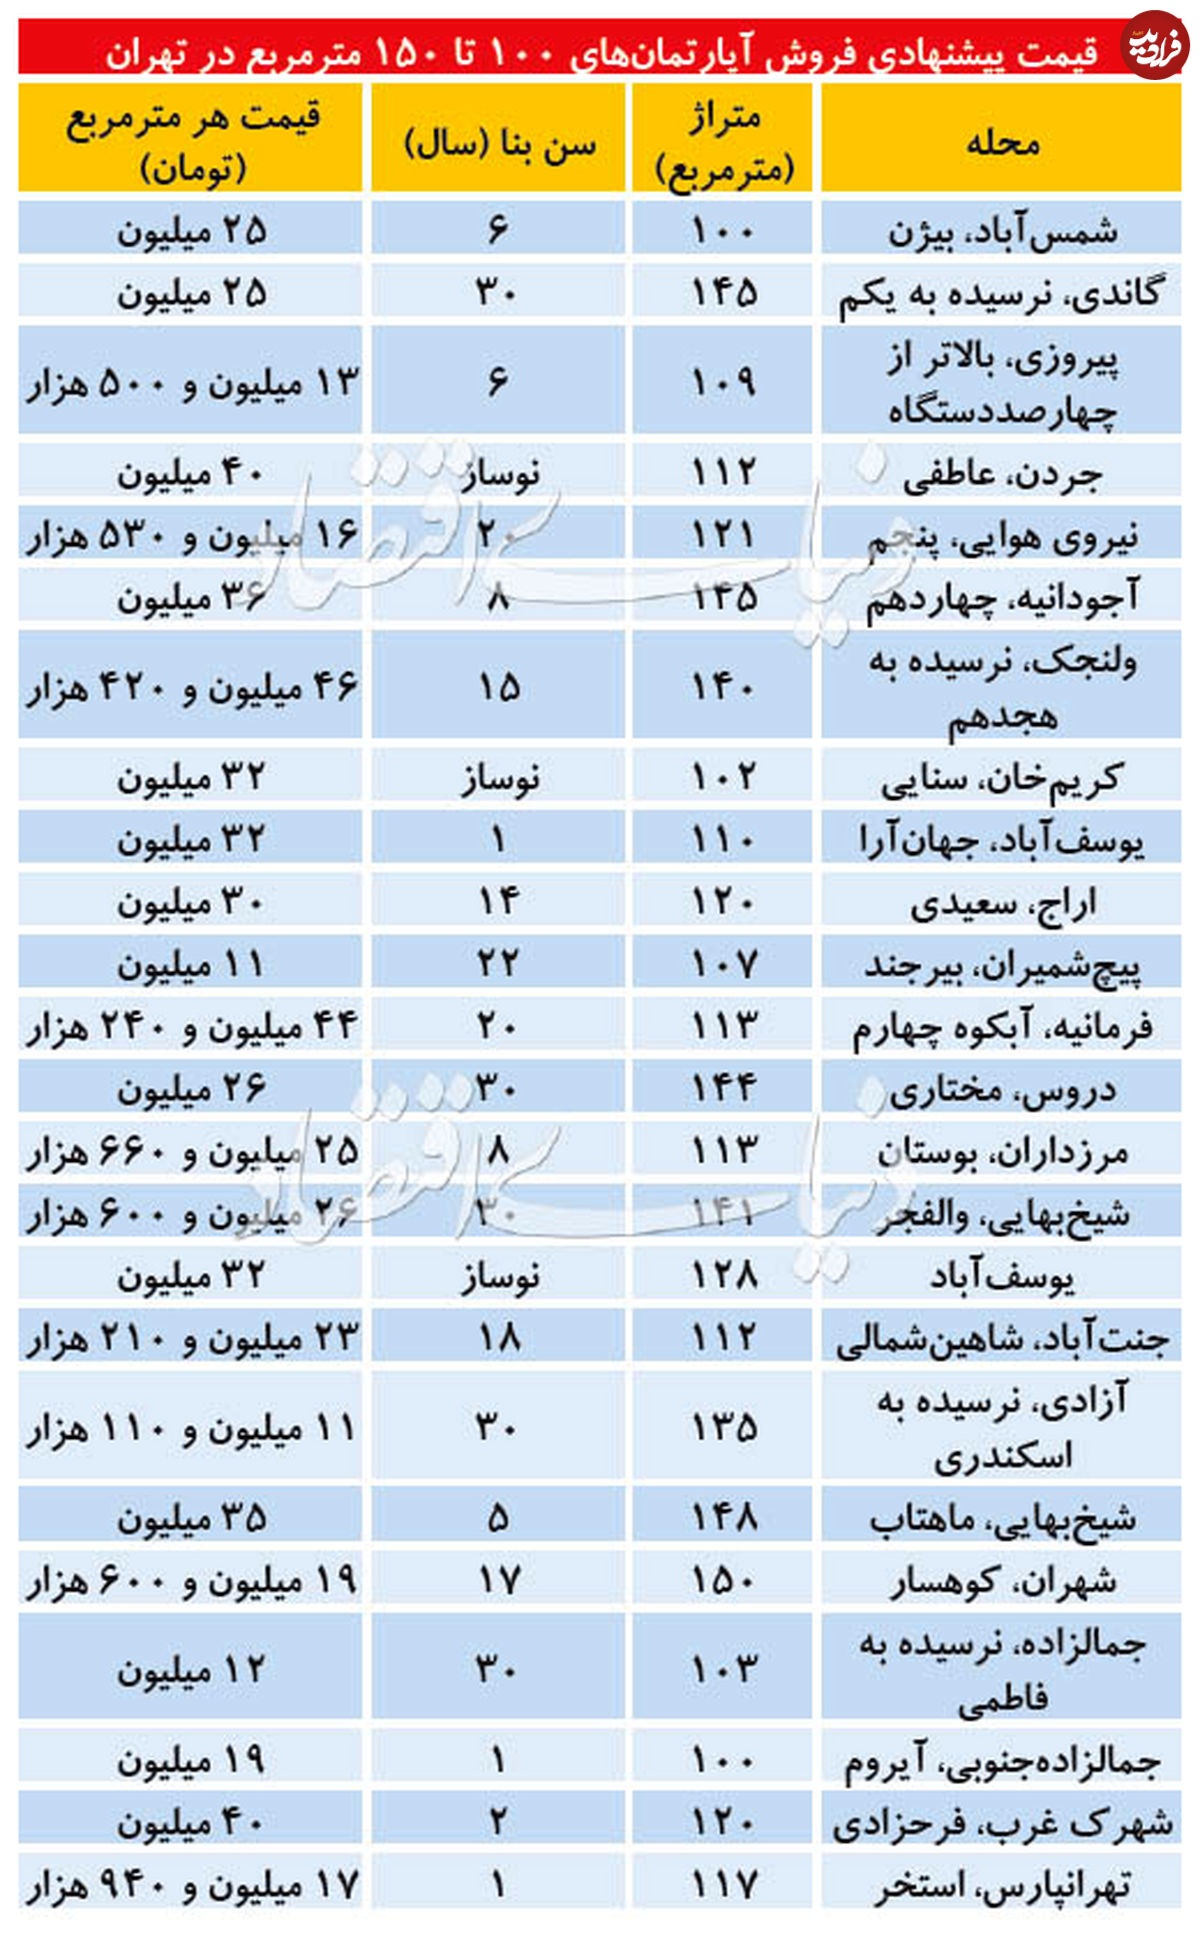 قیمت آپارتمان ۱۰۰ تا ۱۵۰ مترمربع در تهران